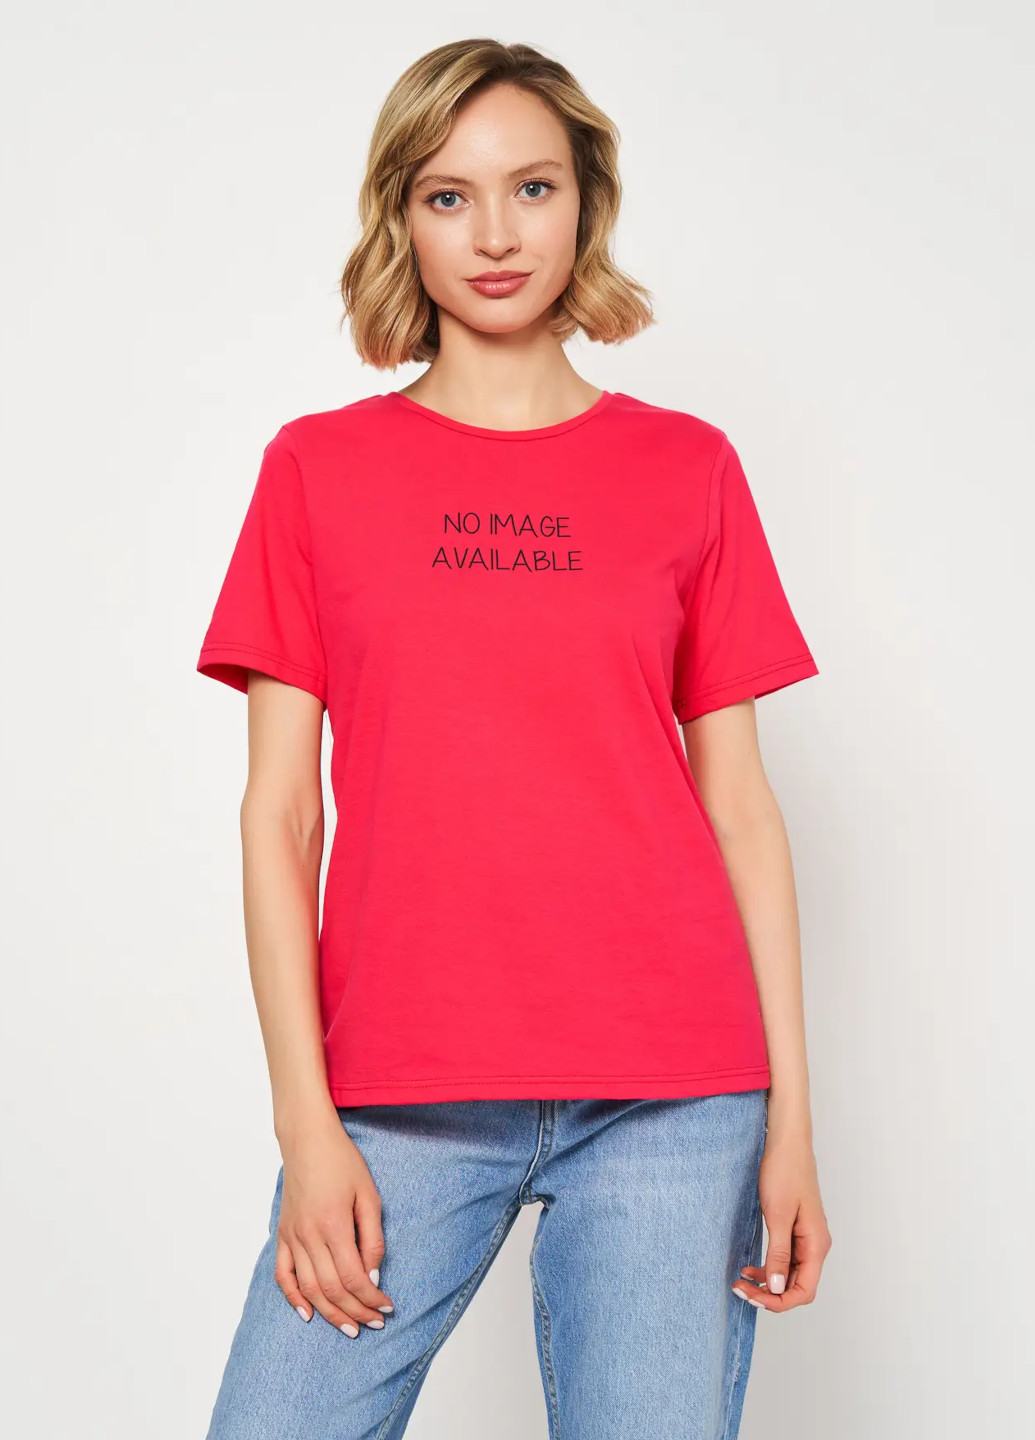 Червона всесезон футболка жіноча з коротким рукавом Роза